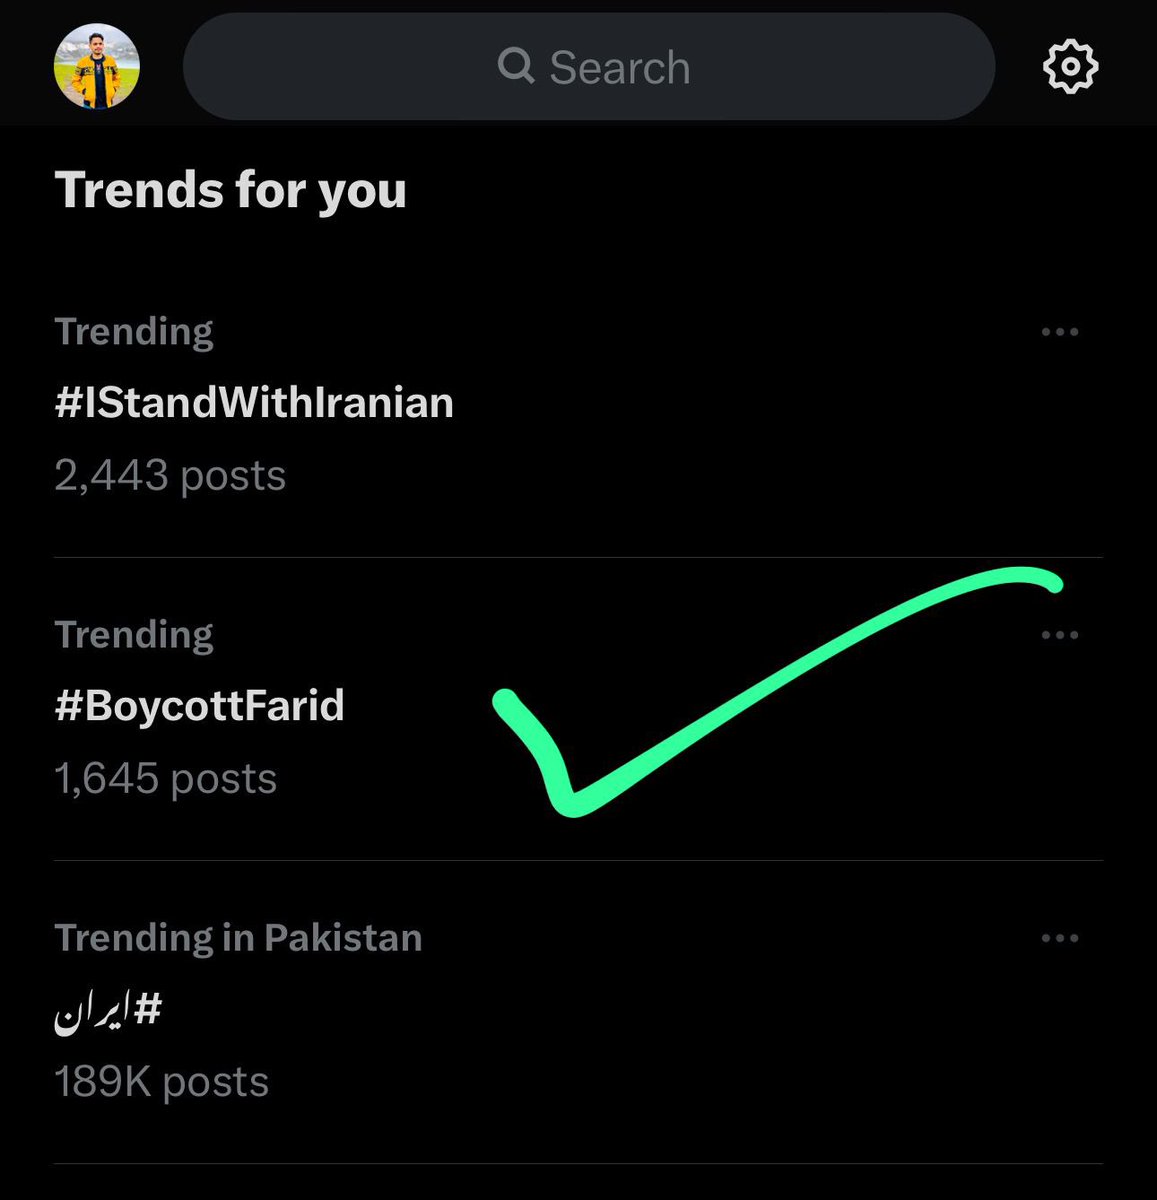 So #BoycottFarid is trending “ Proud Moment for South Asia ”